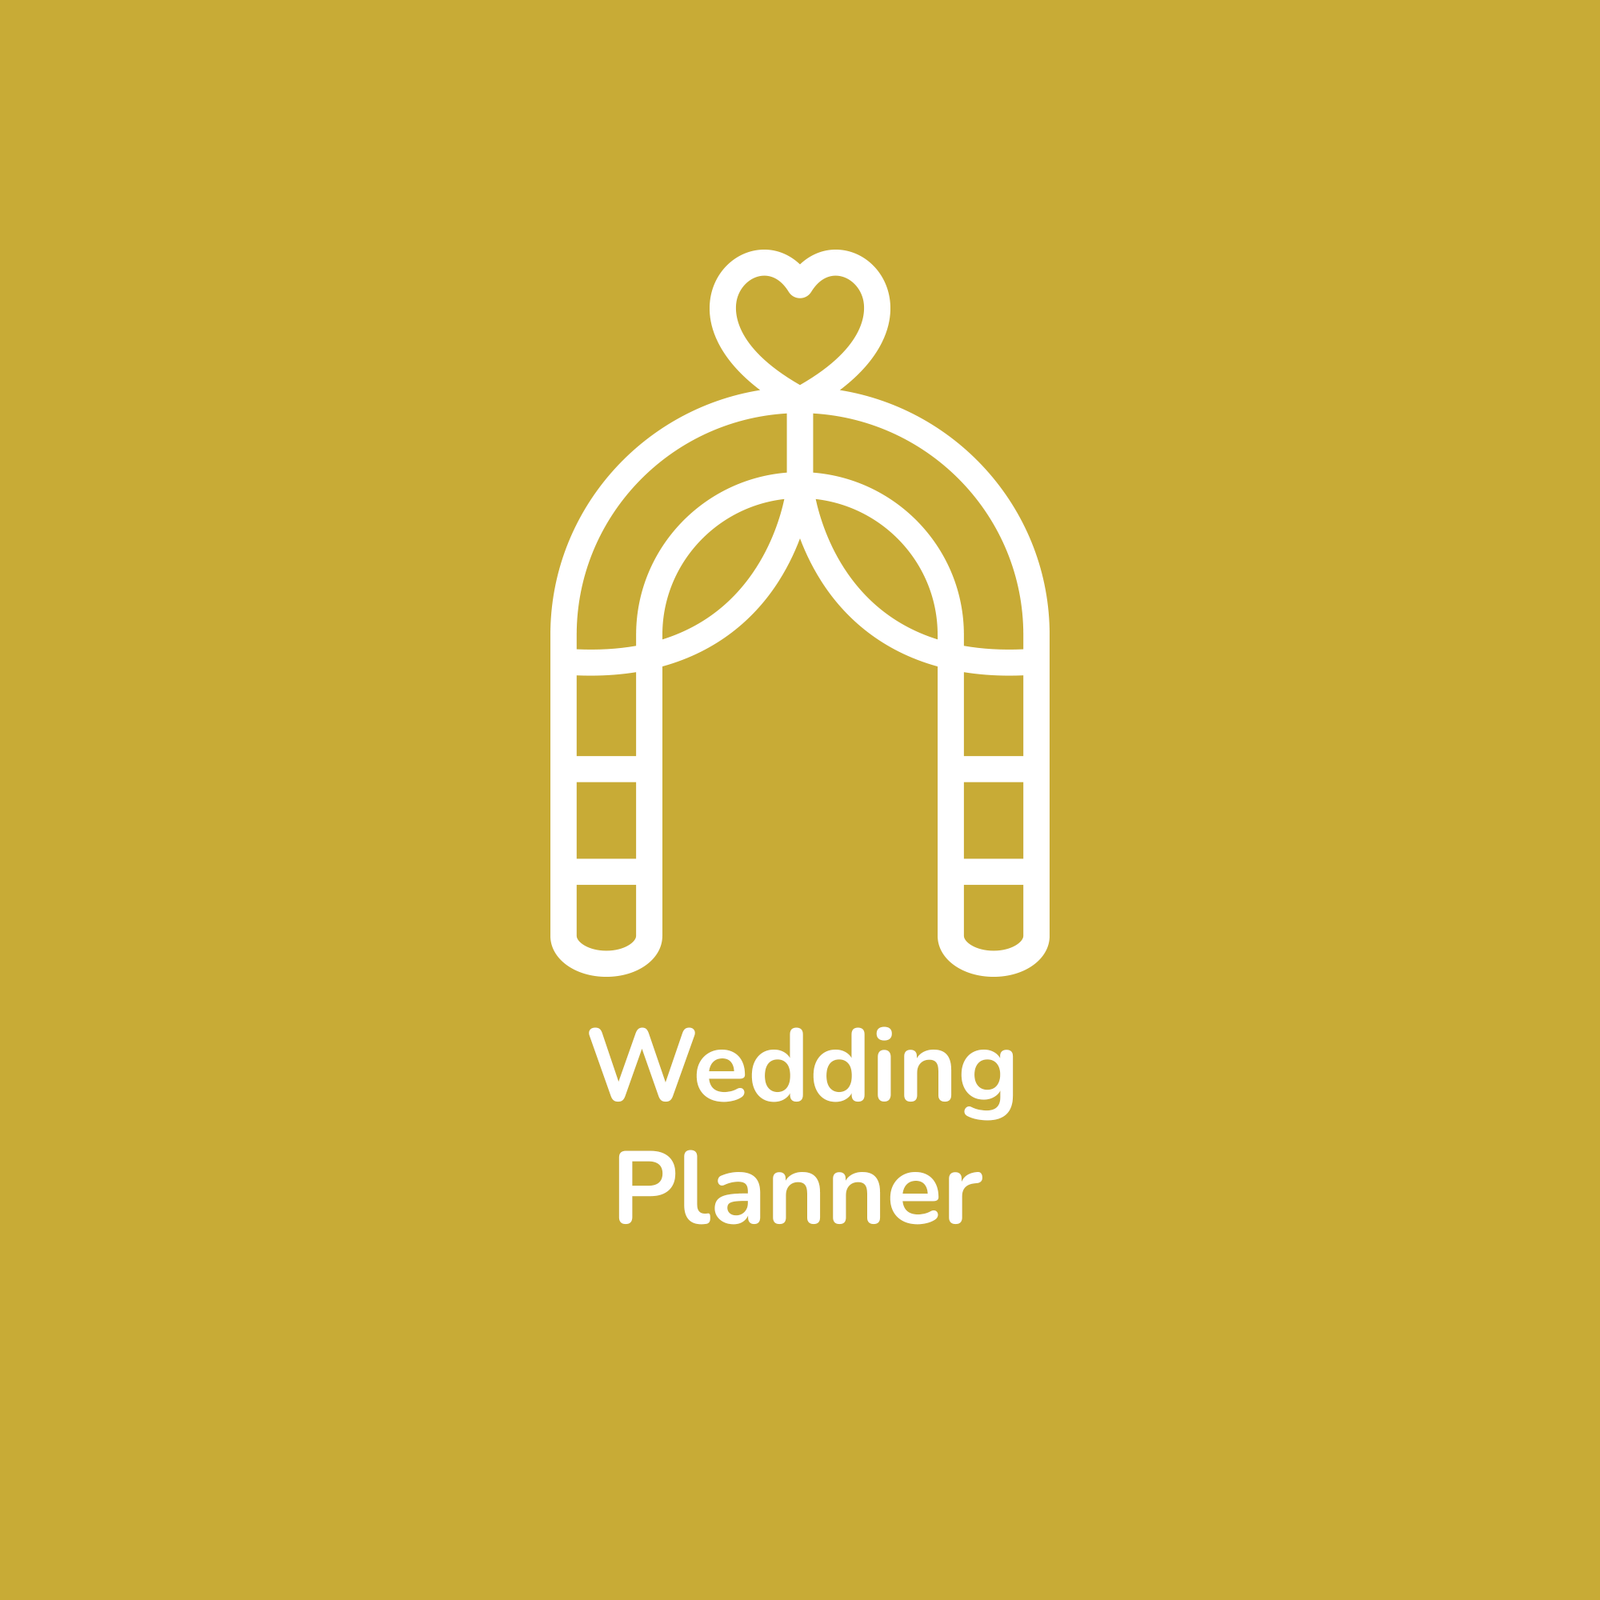 Wedding planner